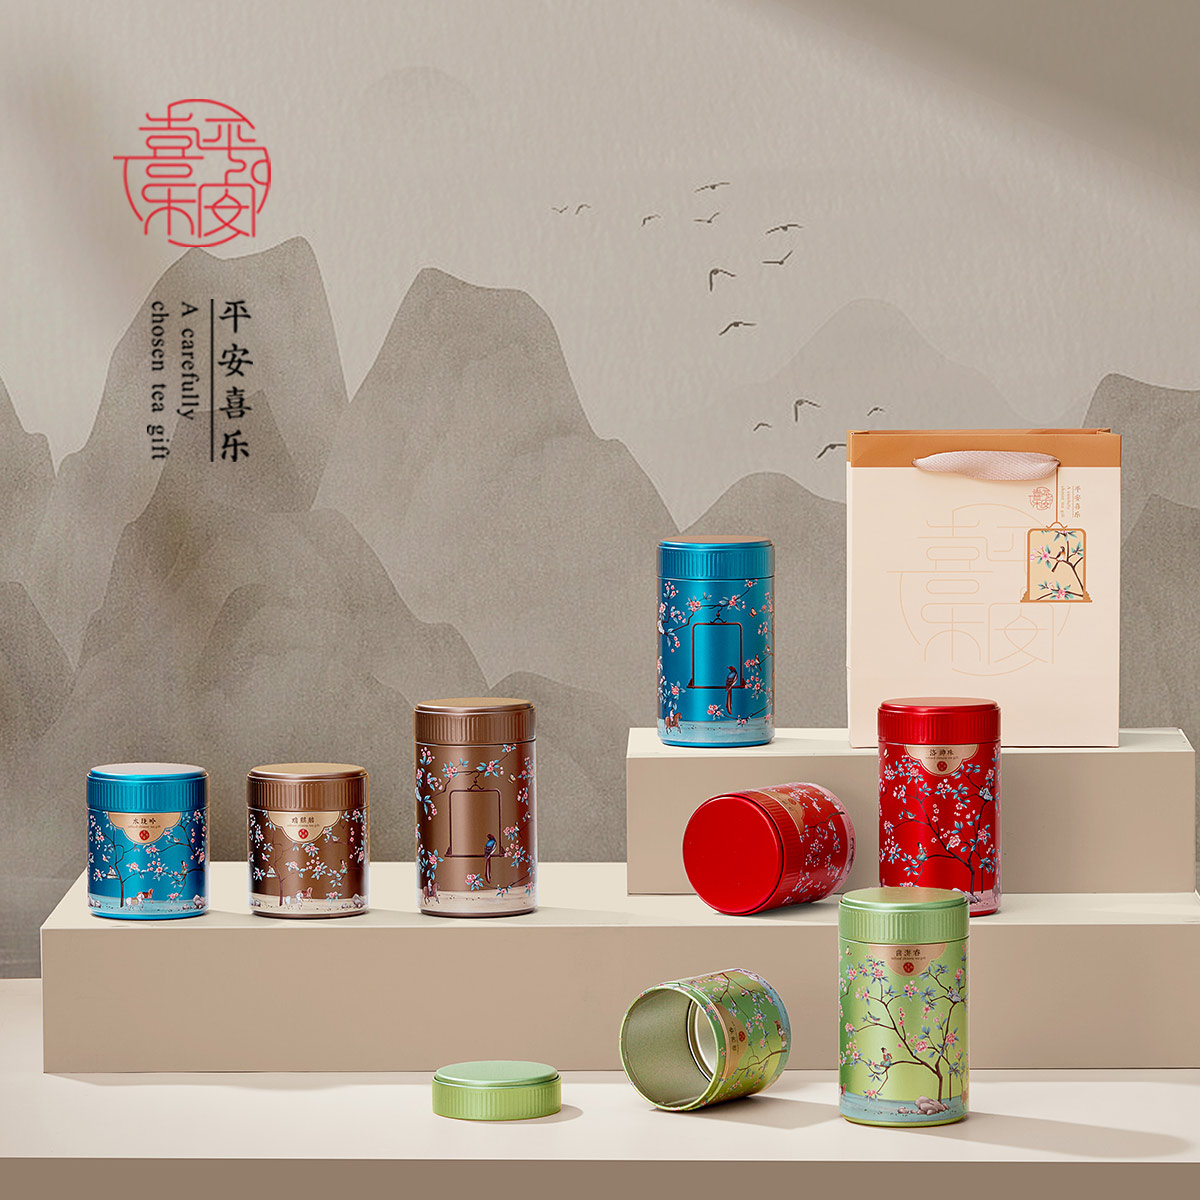 新款创意小号红茶绿茶通用茶叶罐铁罐茶叶包装盒铁盒礼盒空盒定制